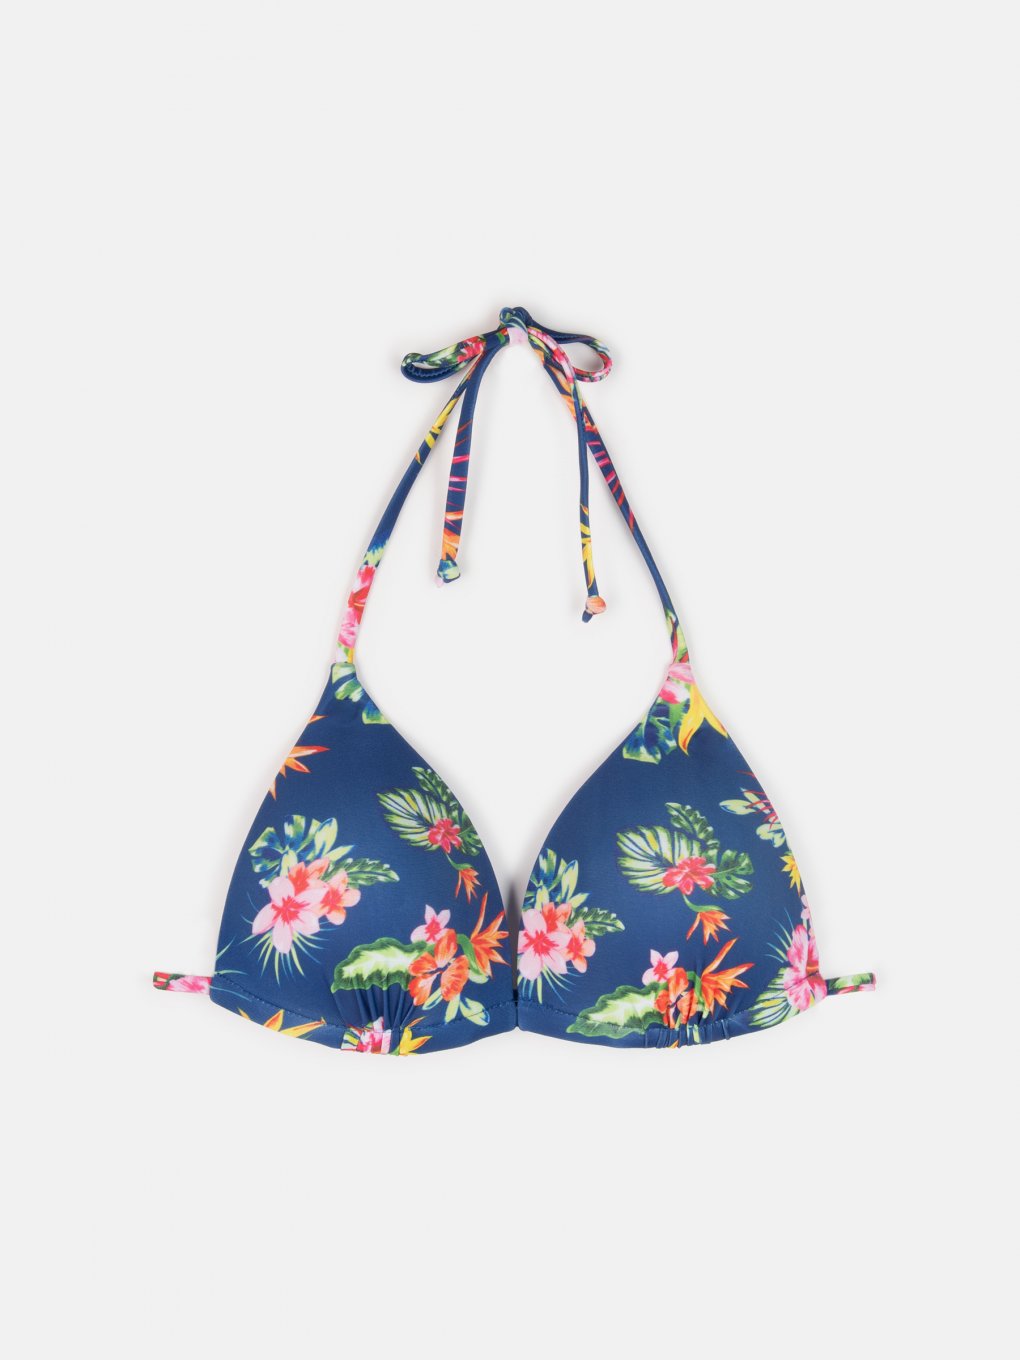 Floral triangle bikini top